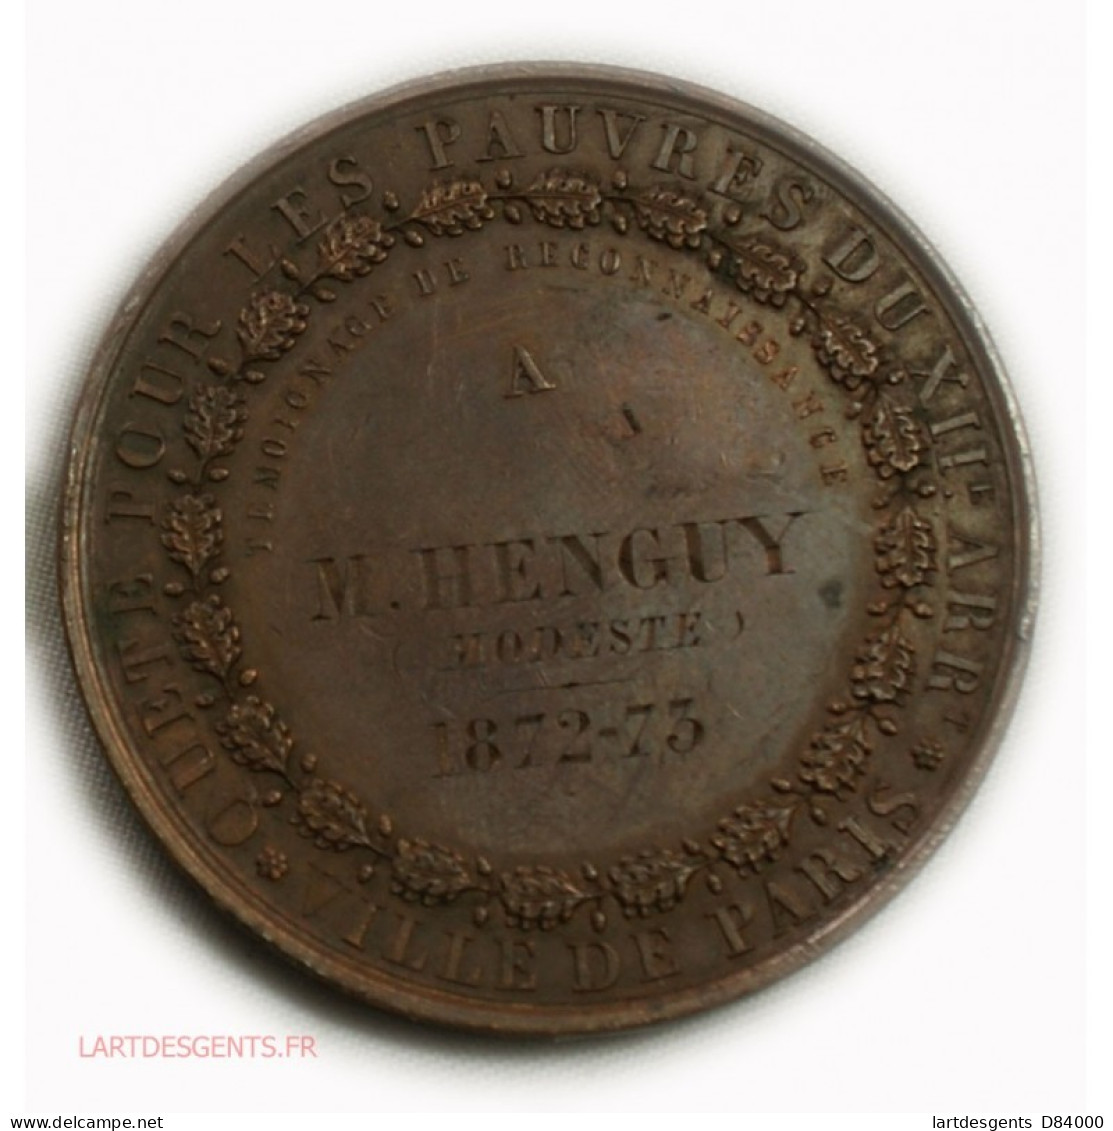 Médaille Quête Pour Les Pauvres 2ème Arrond. Paris 1872-73, Lartdesgents - Royaux / De Noblesse